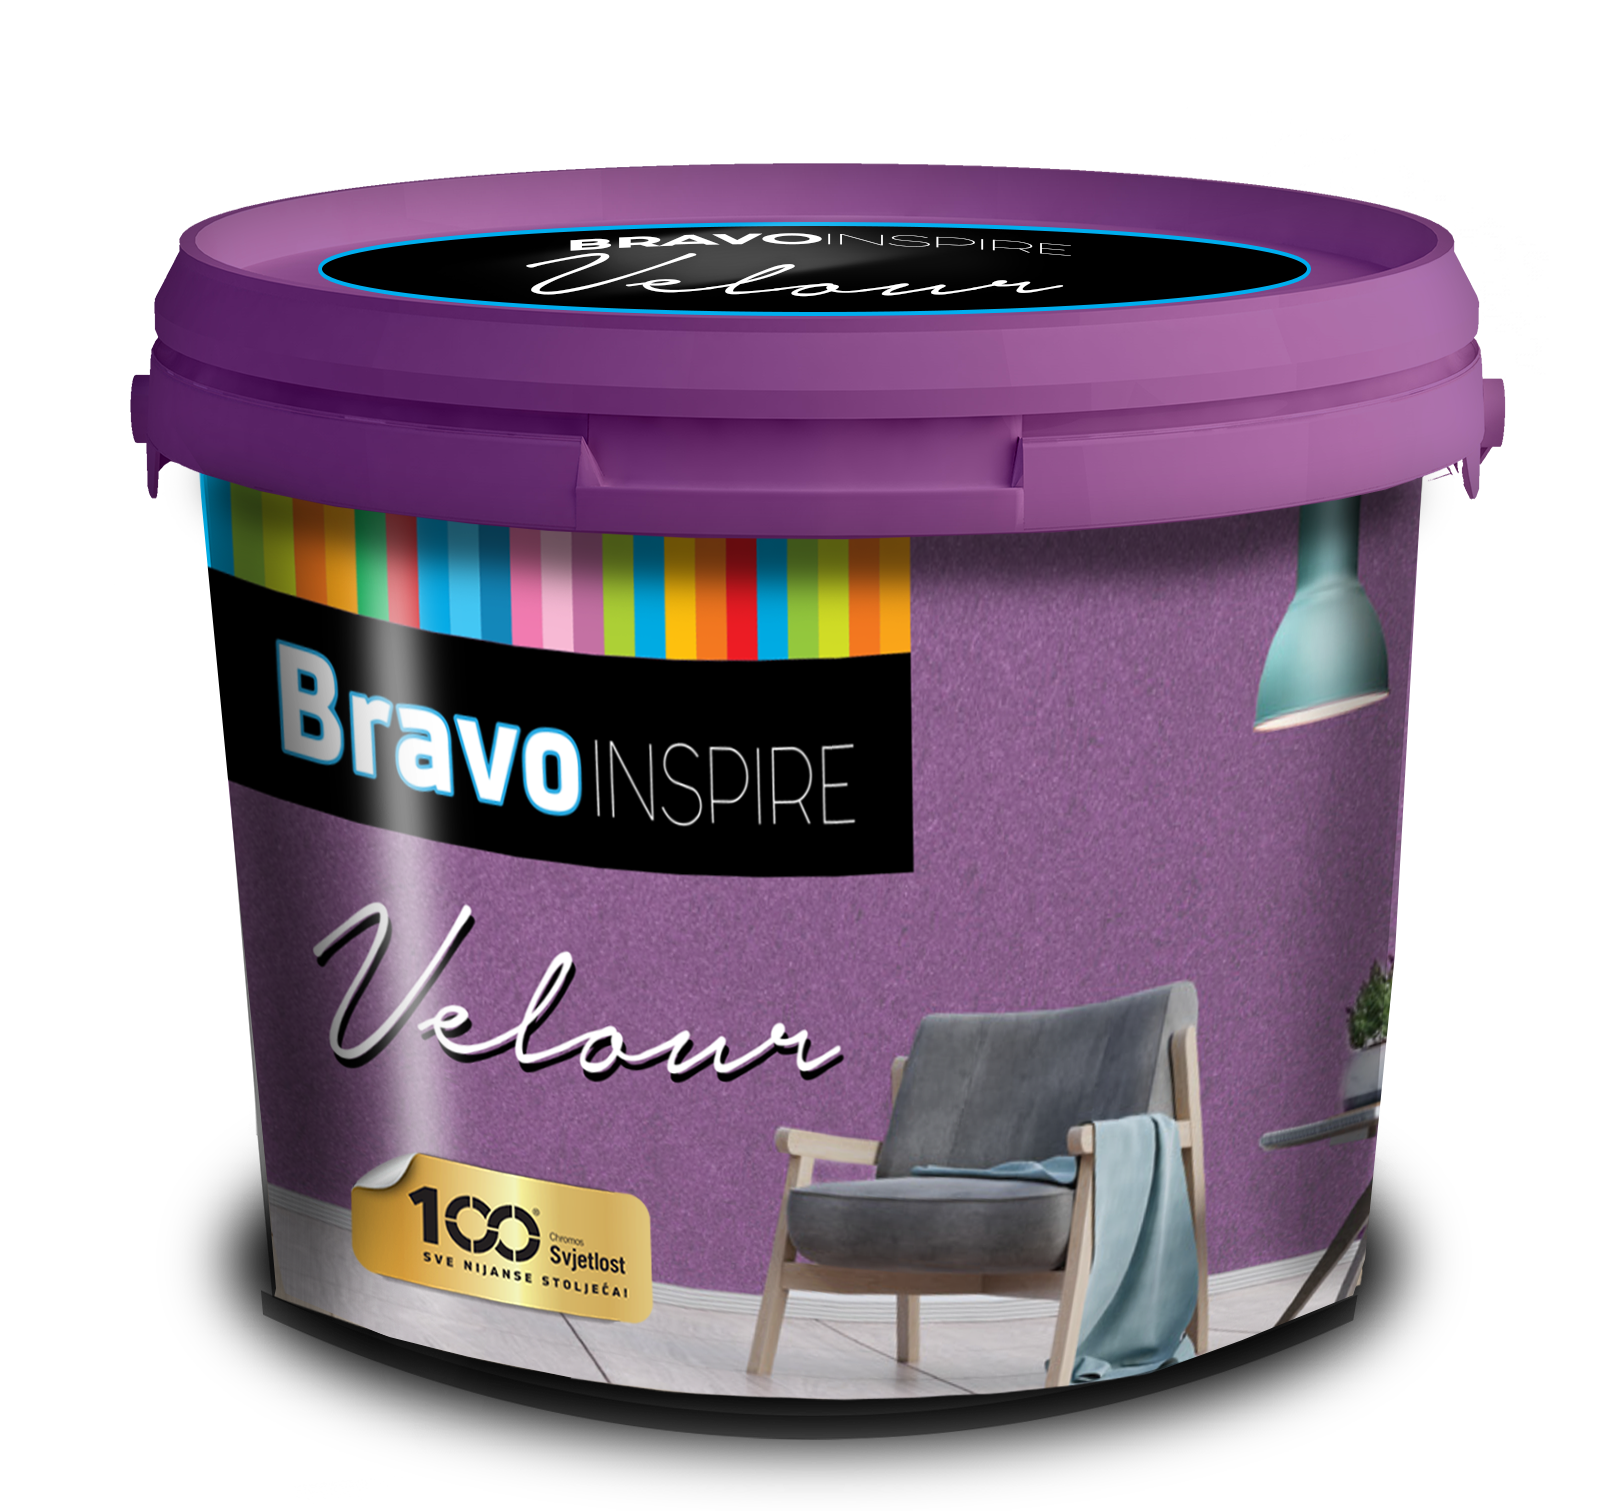 BRAVO INSPIRE VELOUR - Dekoračná farba s jemným efektom